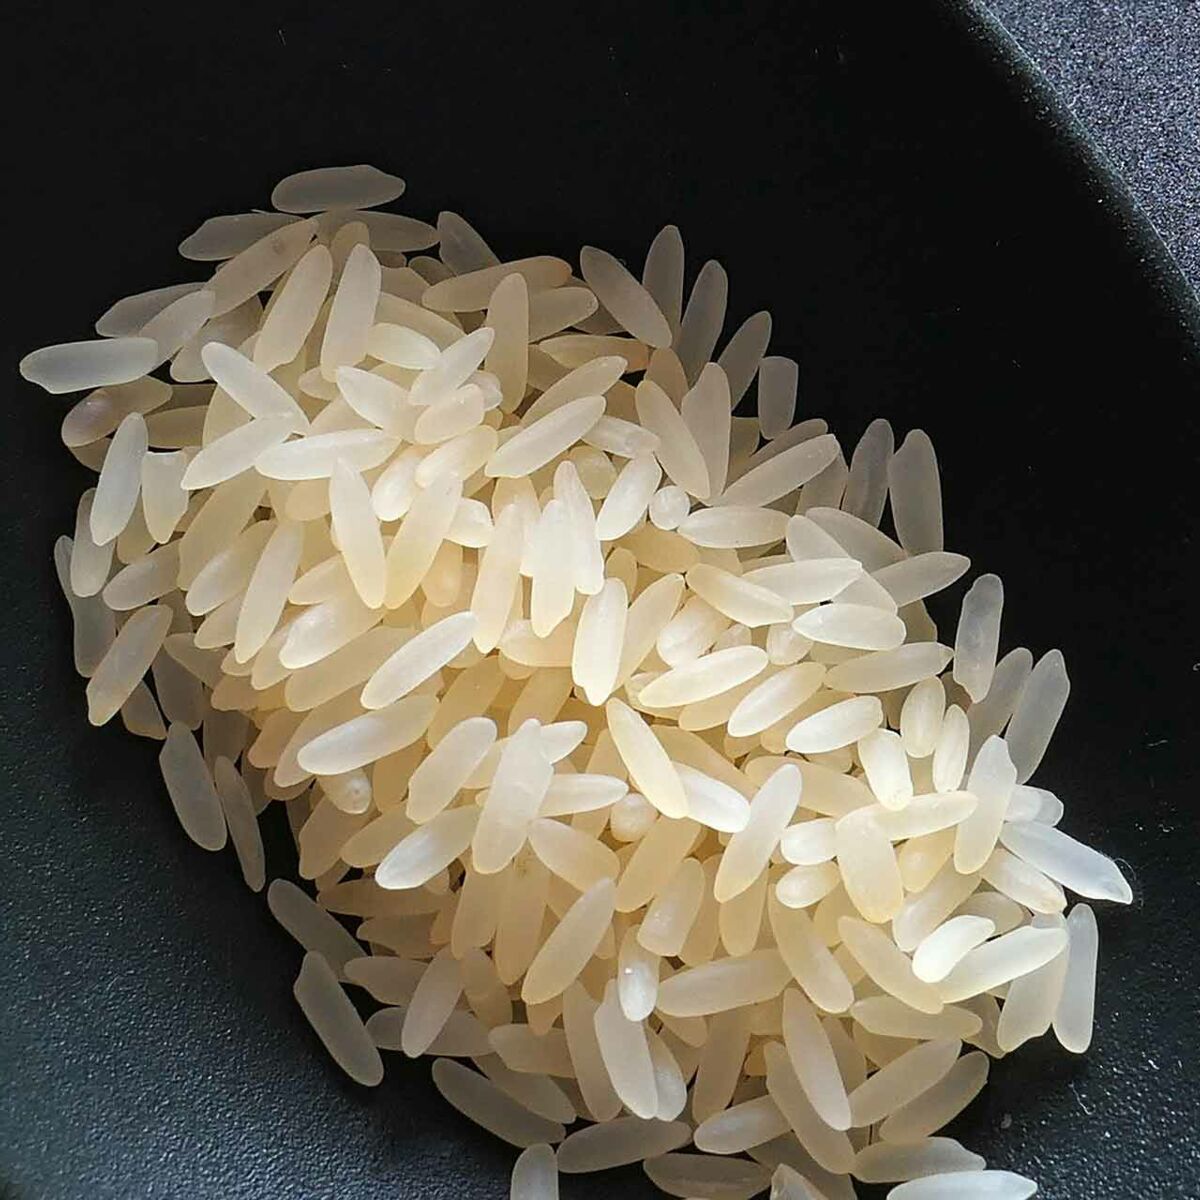 E.Leclerc - Grâce à ce cuiseur à riz, cuisiner votre riz